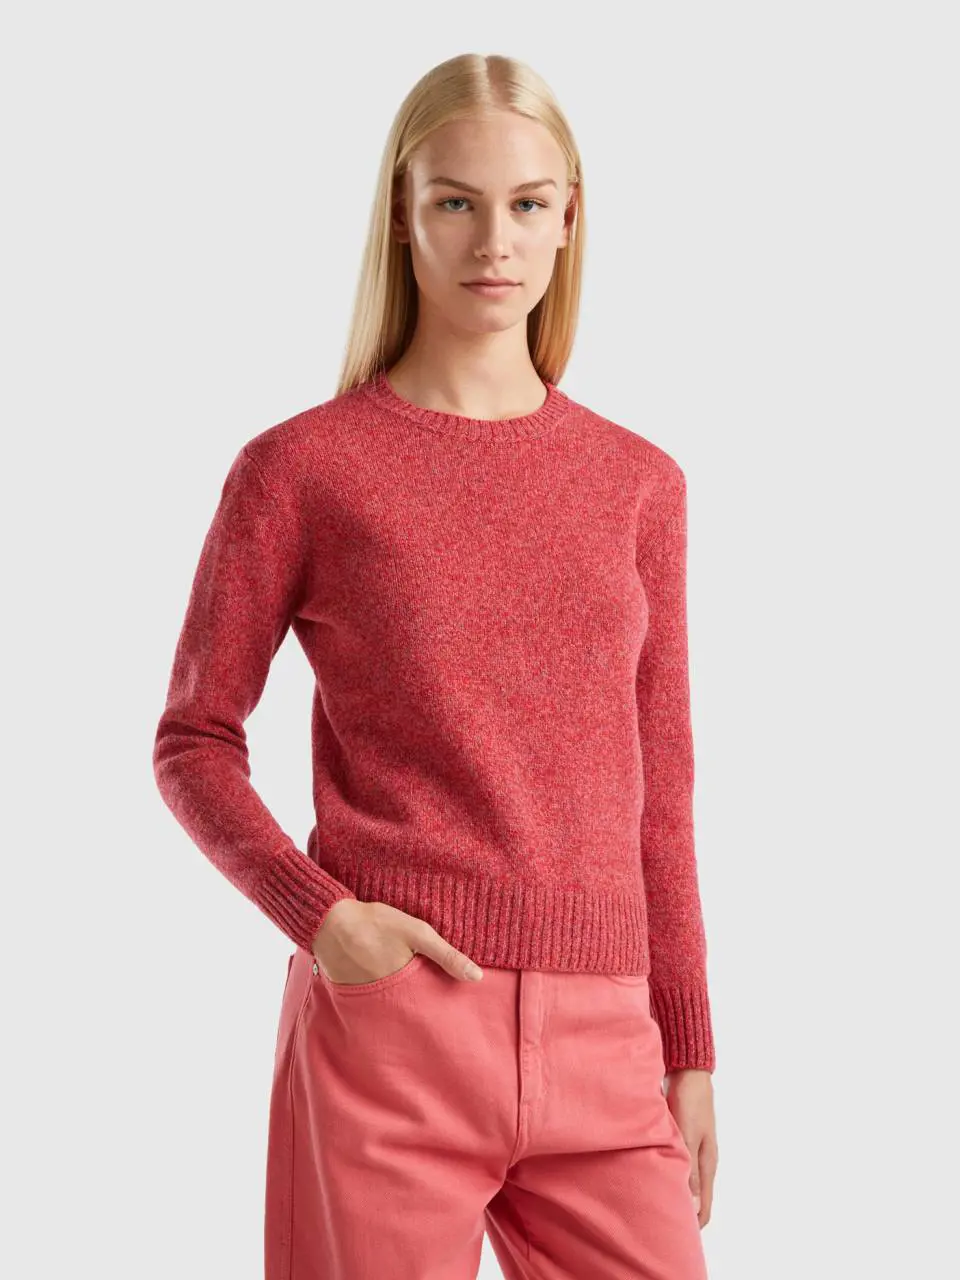 Benetton sweater in pure shetland wool. 1